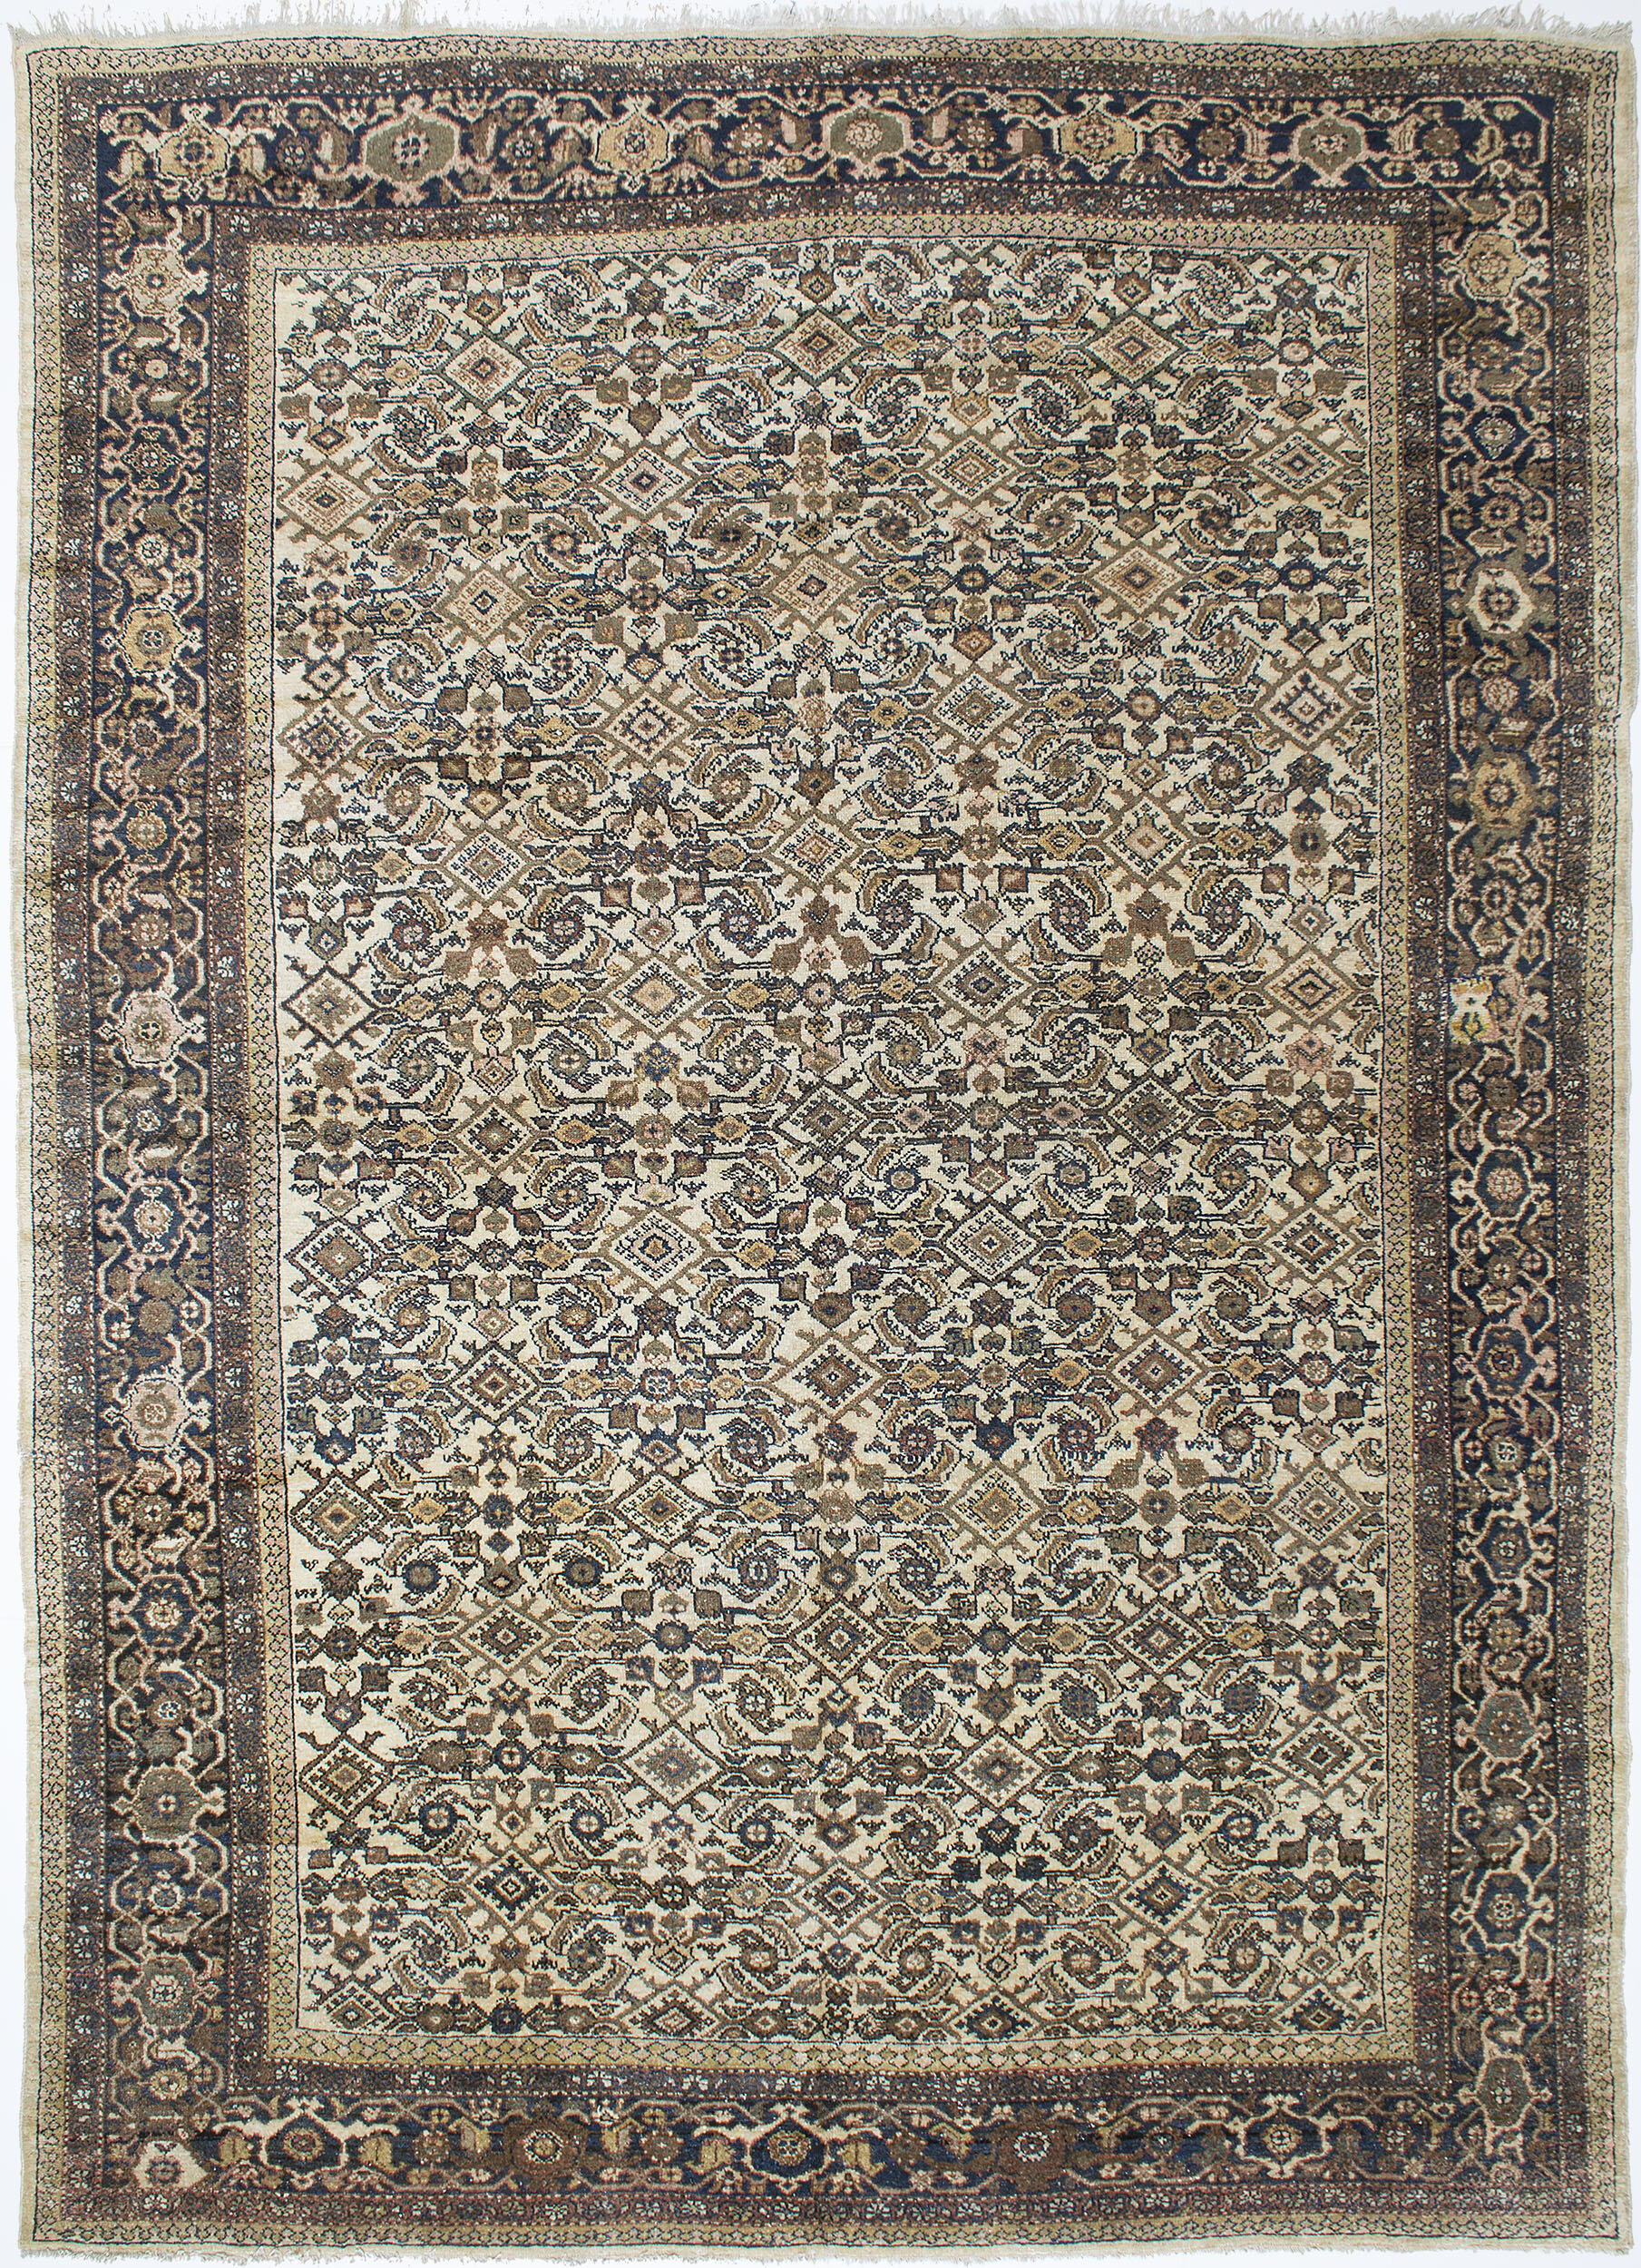 Northwest Persian Carpet 12' 8" x 9' 3"